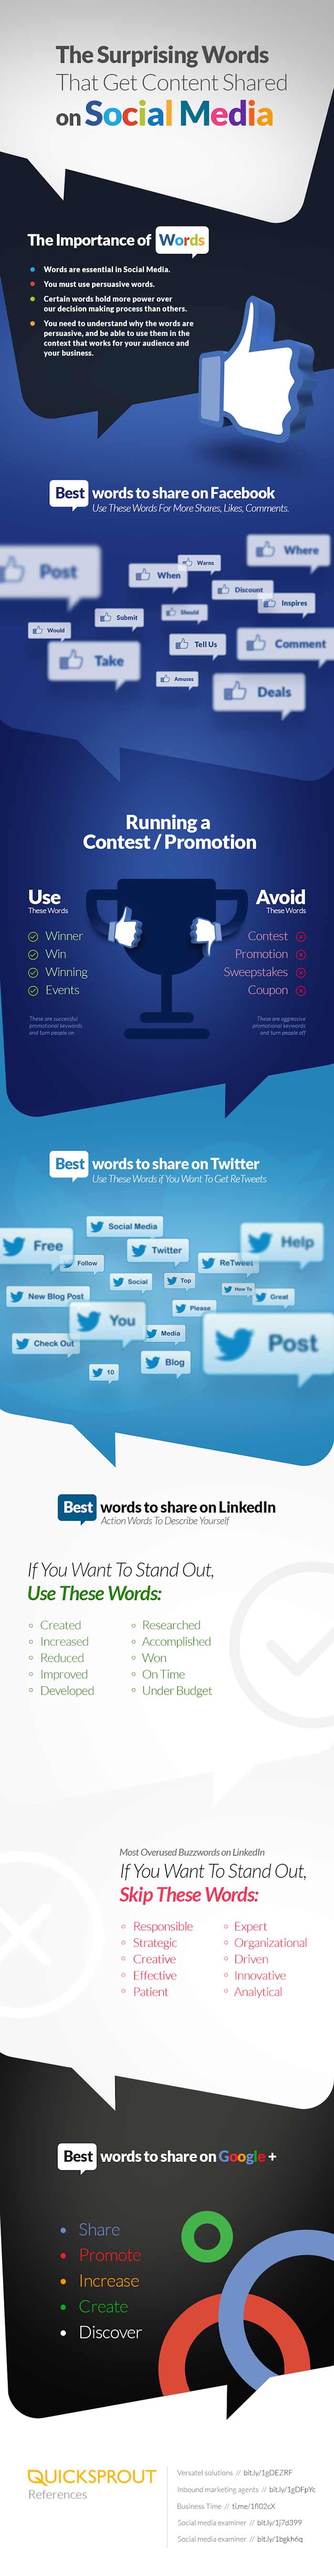 Infografia sobre las mejores palabras para compartir en las redes sociales